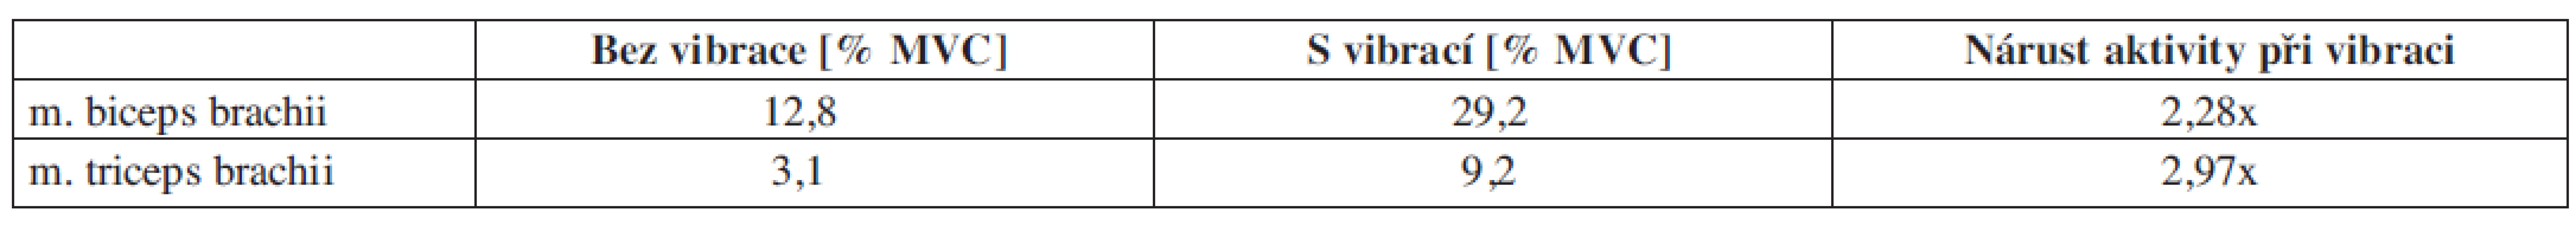 Proband č. 2 – relativní hodnoty plochy pod křivkou pro statickou zátěž vyjádřené v procentech MVC s vibrací a bez vibrace.